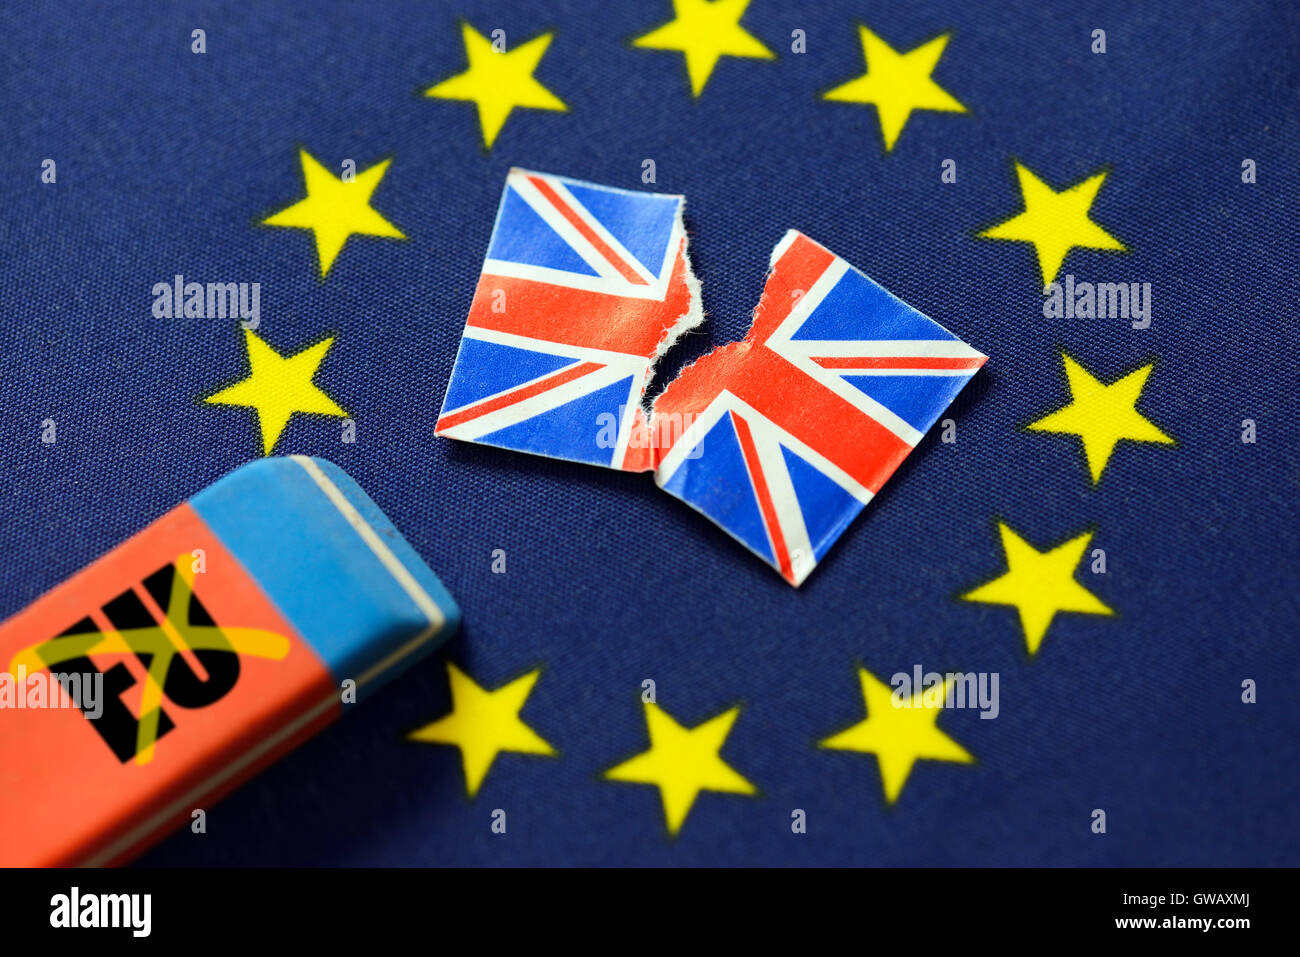 Drapeau de l'UE avec les étoiles effacées, photo symbolique Brexit, UE-Fahne mit ausradiertem Symbolfoto Brexit, Stern Banque D'Images